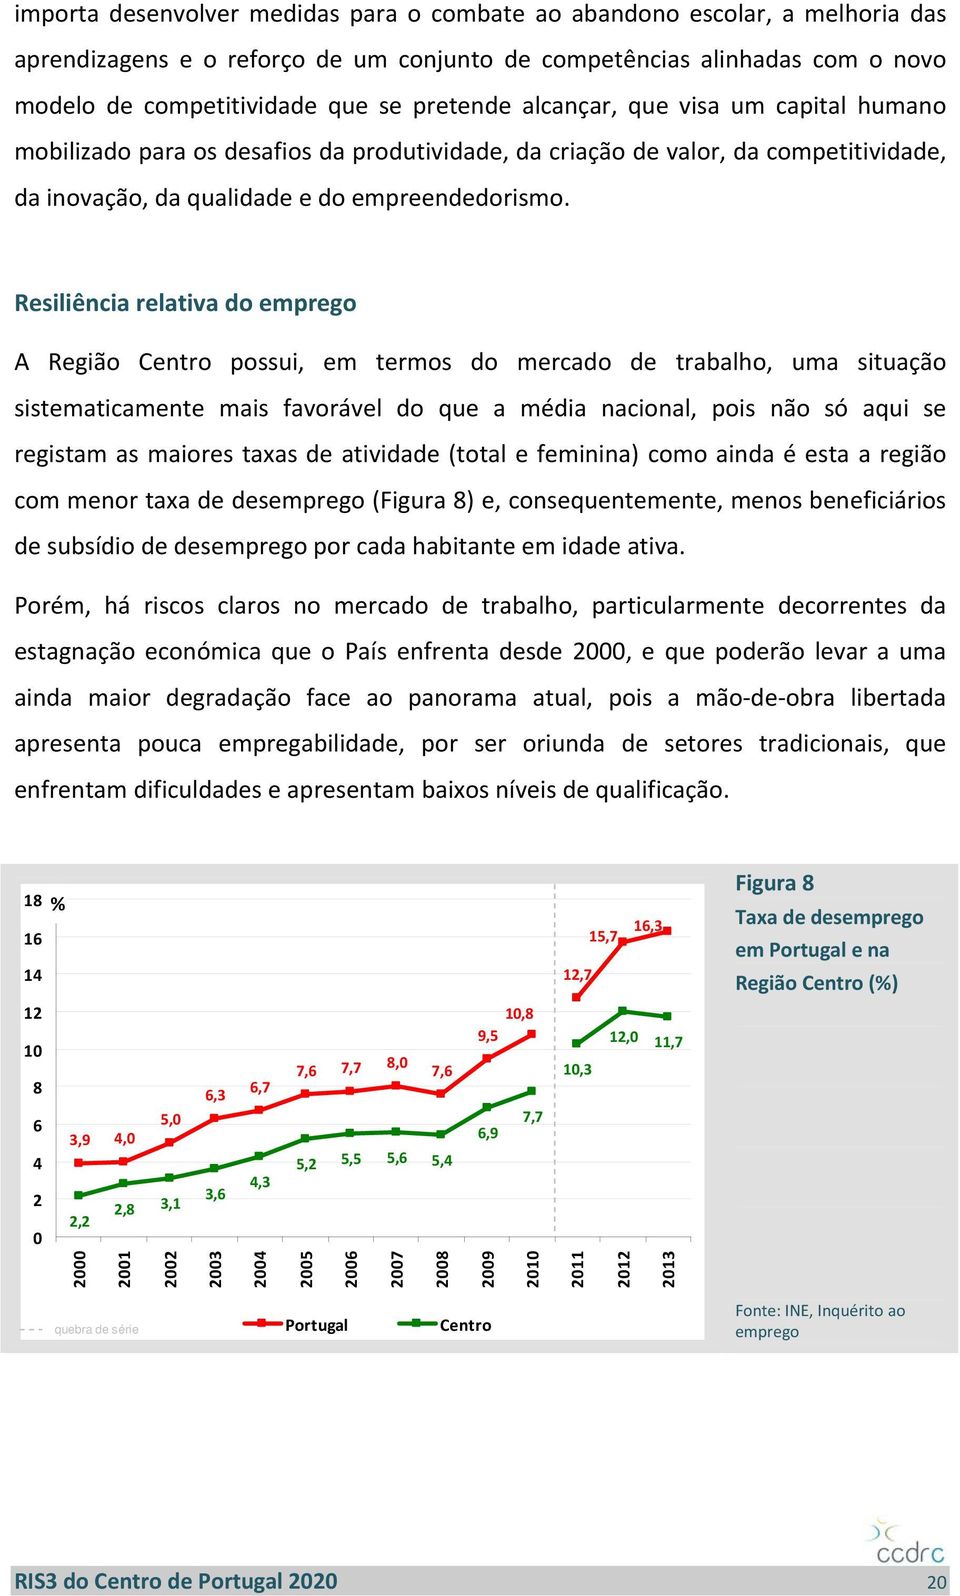 Resiliência relativa do emprego A Região Centro possui, em termos do mercado de trabalho, uma situação sistematicamente mais favorável do que a média nacional, pois não só aqui se registam as maiores